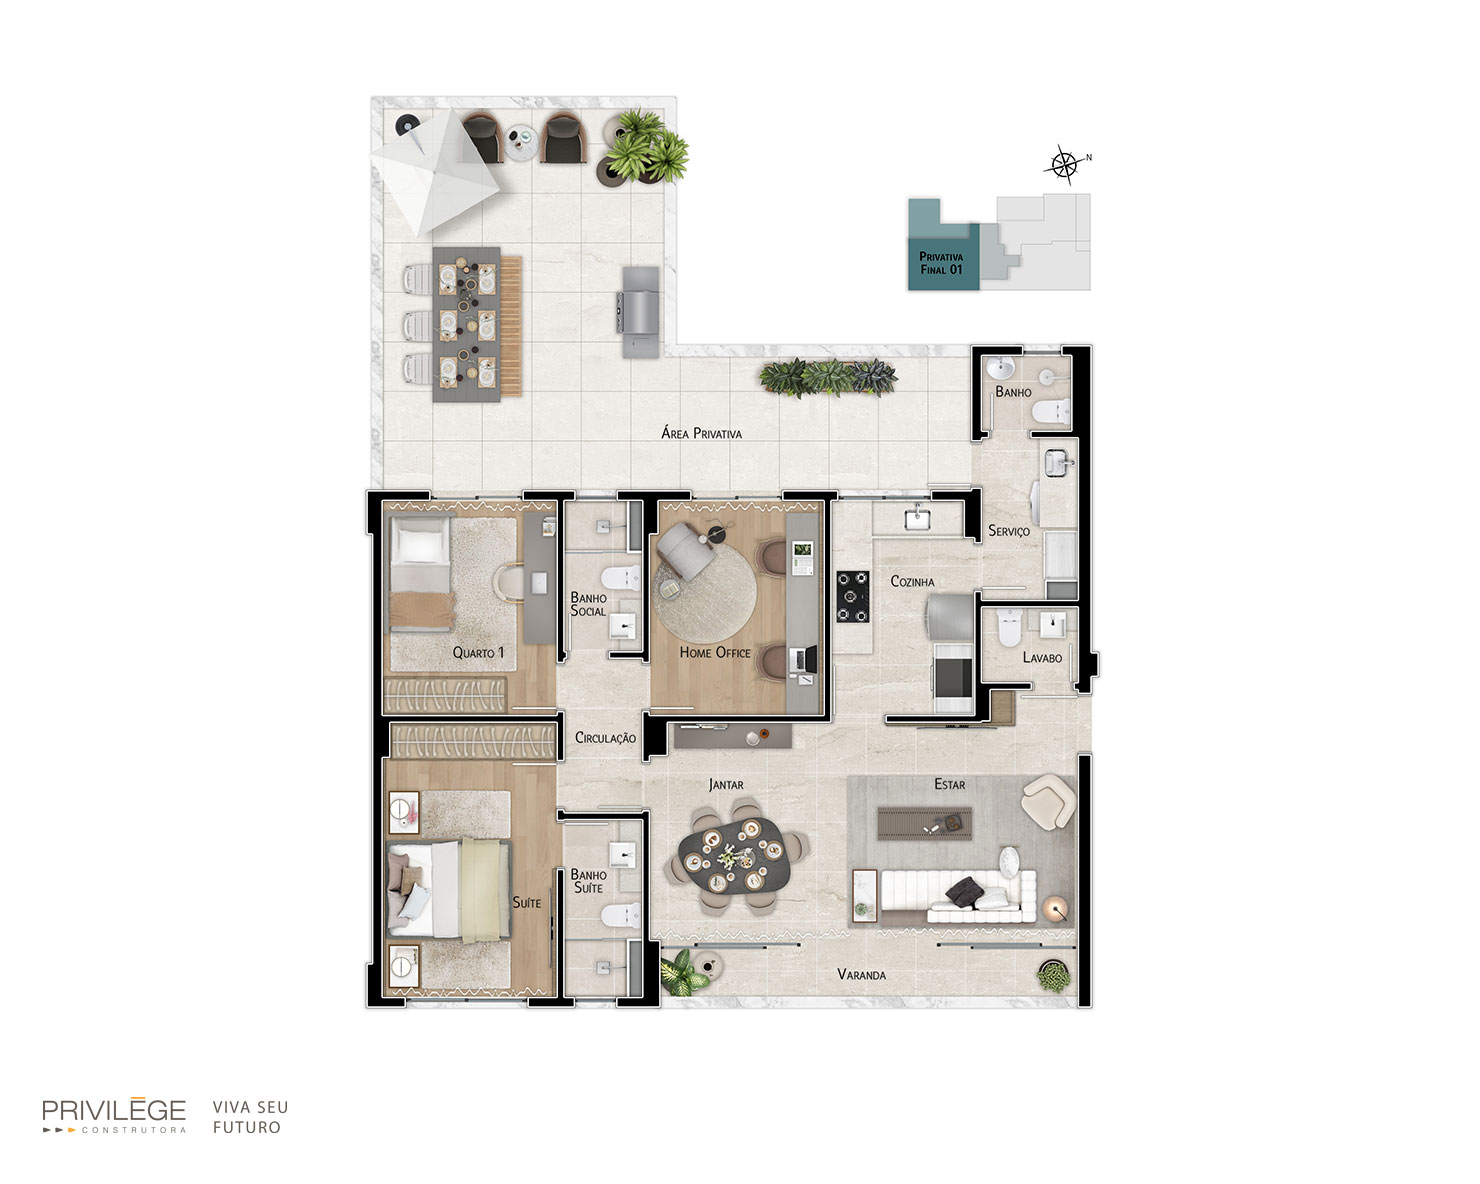 Apartamento garden com 3 quartos e cozinha fechada – final 01